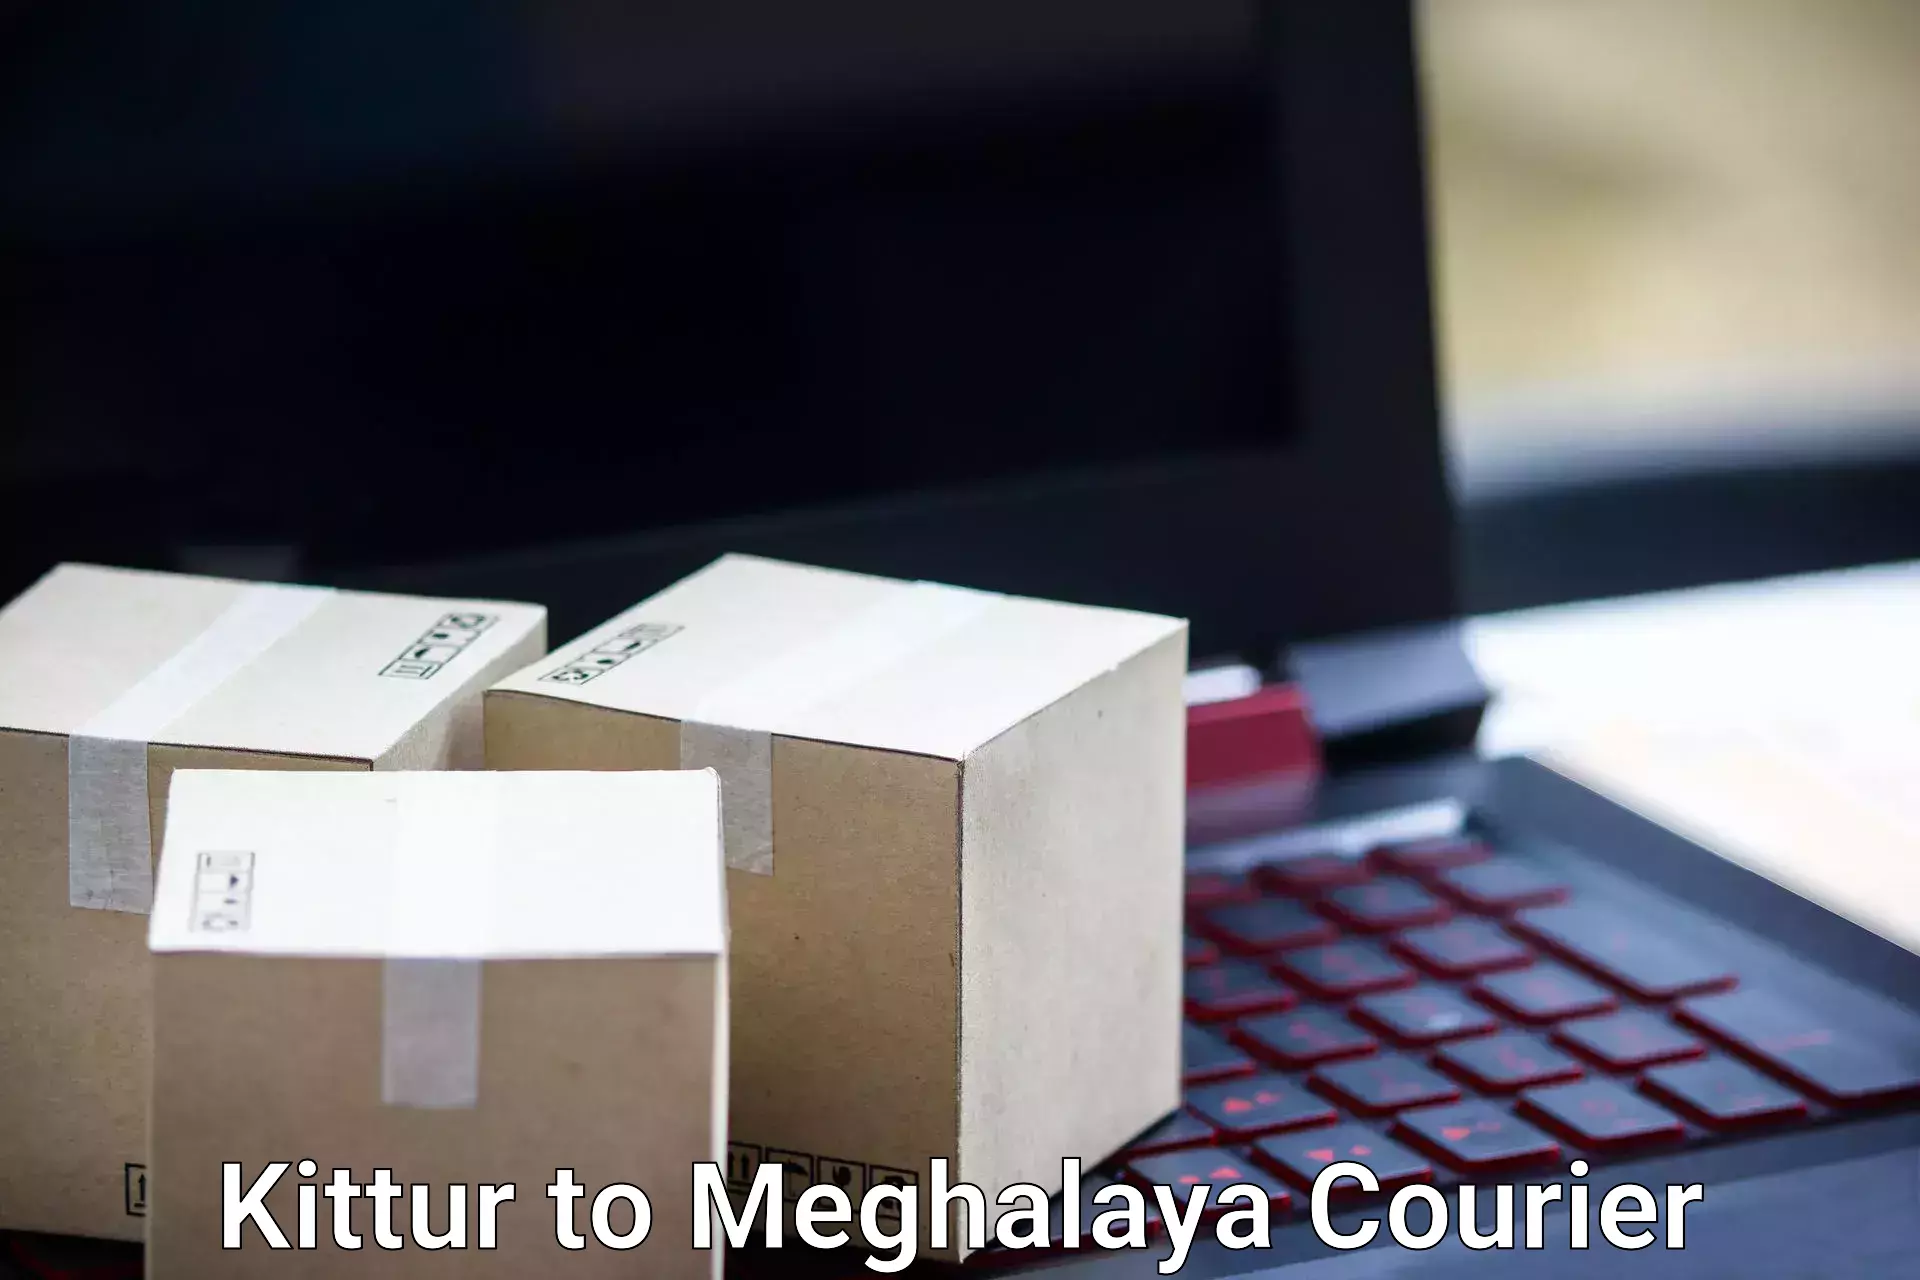 Baggage transport management Kittur to Meghalaya